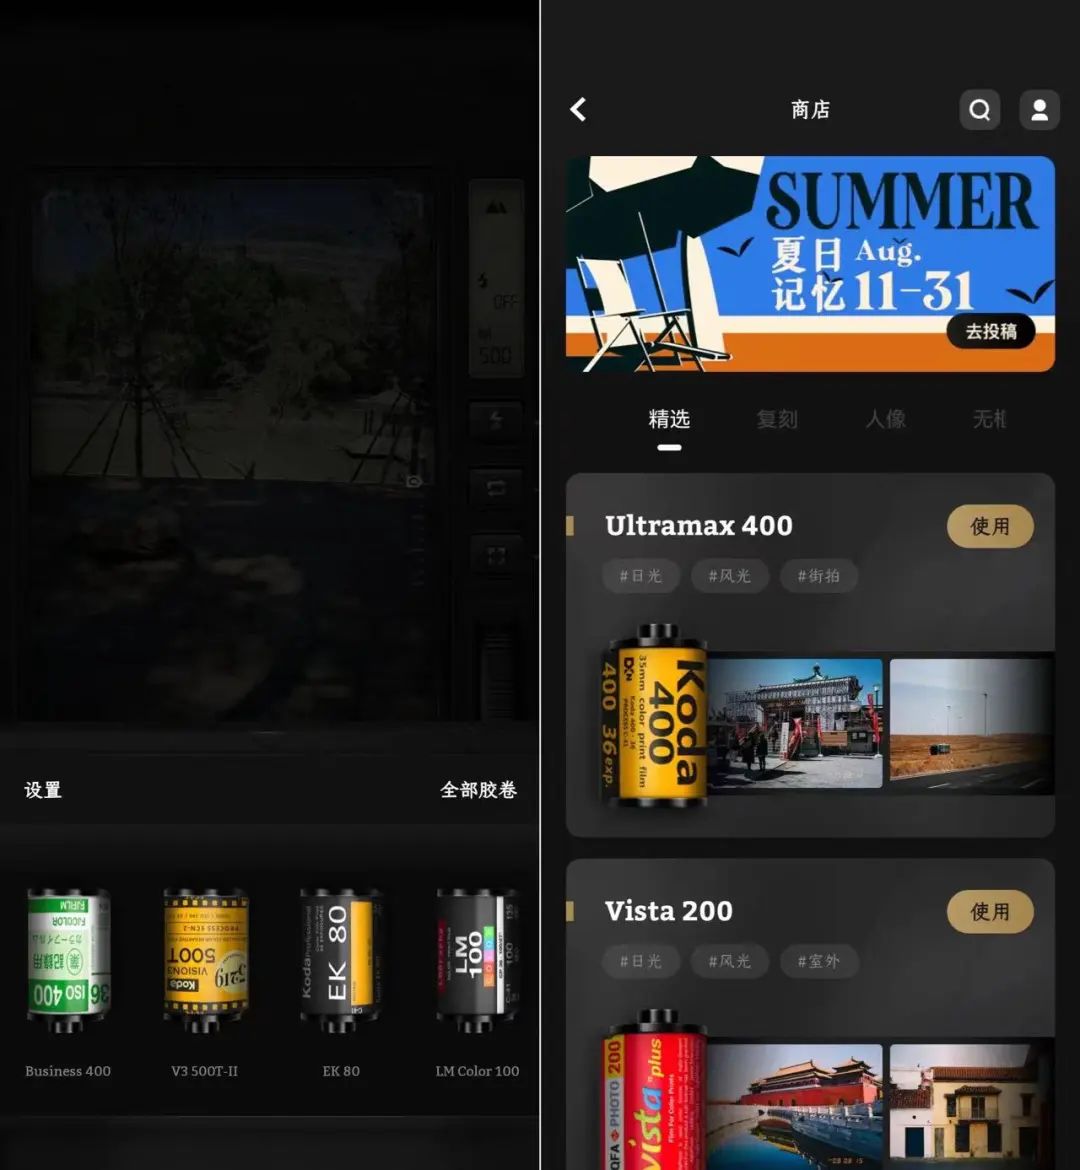 FIMO相机，有趣且强大的拍照工具，复古的胶卷相机app！